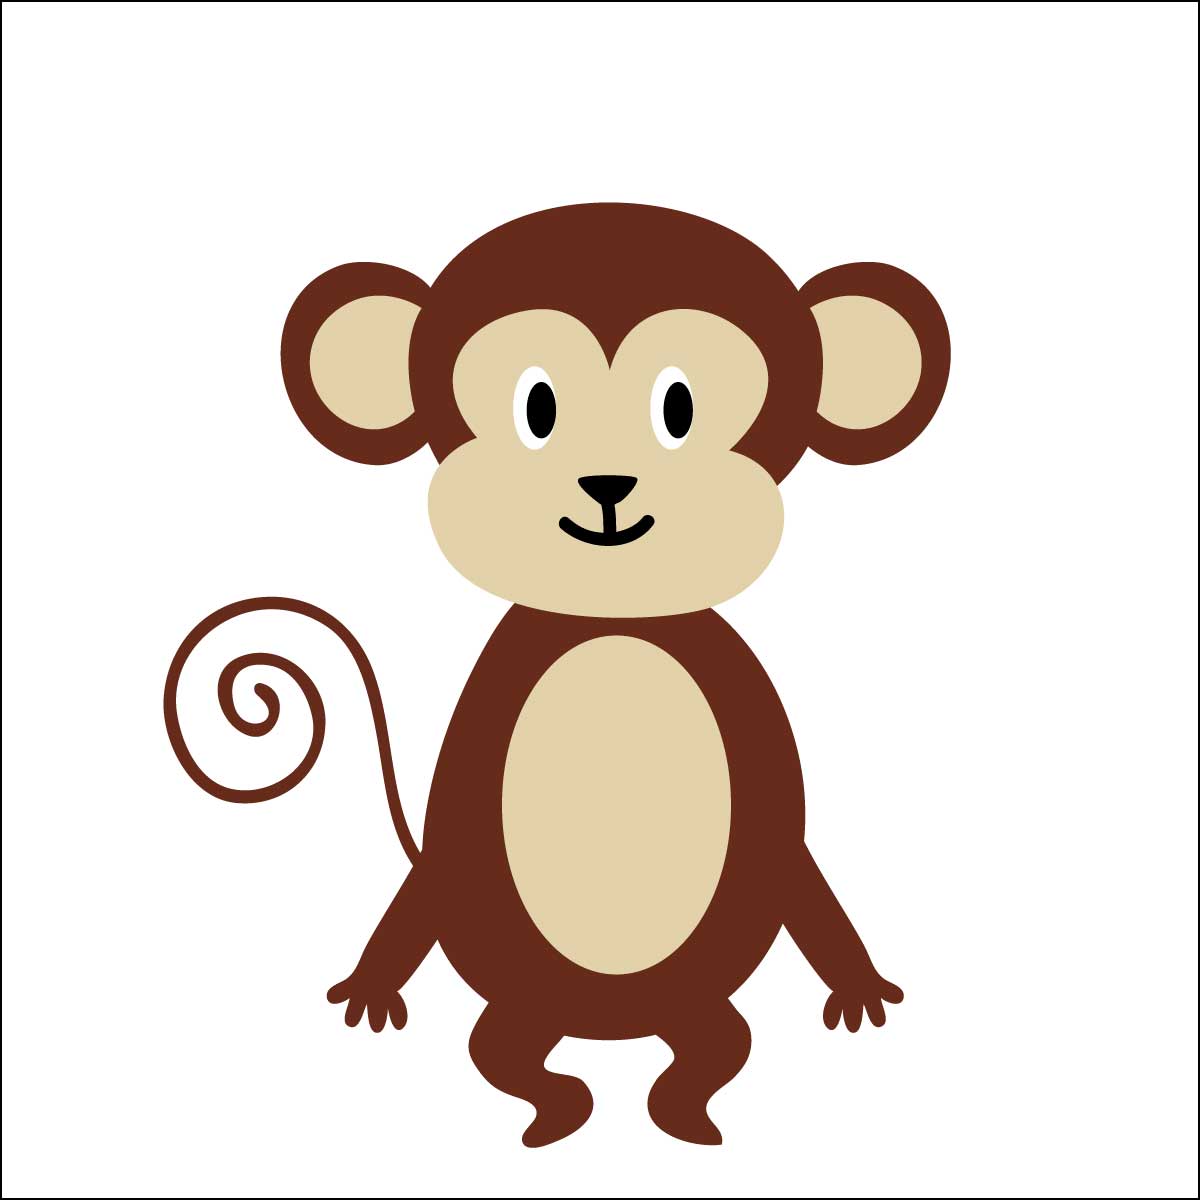 サルキャラクター人気ランキング 猿 チンパンジー オランウータンも 16 位 ランキングー